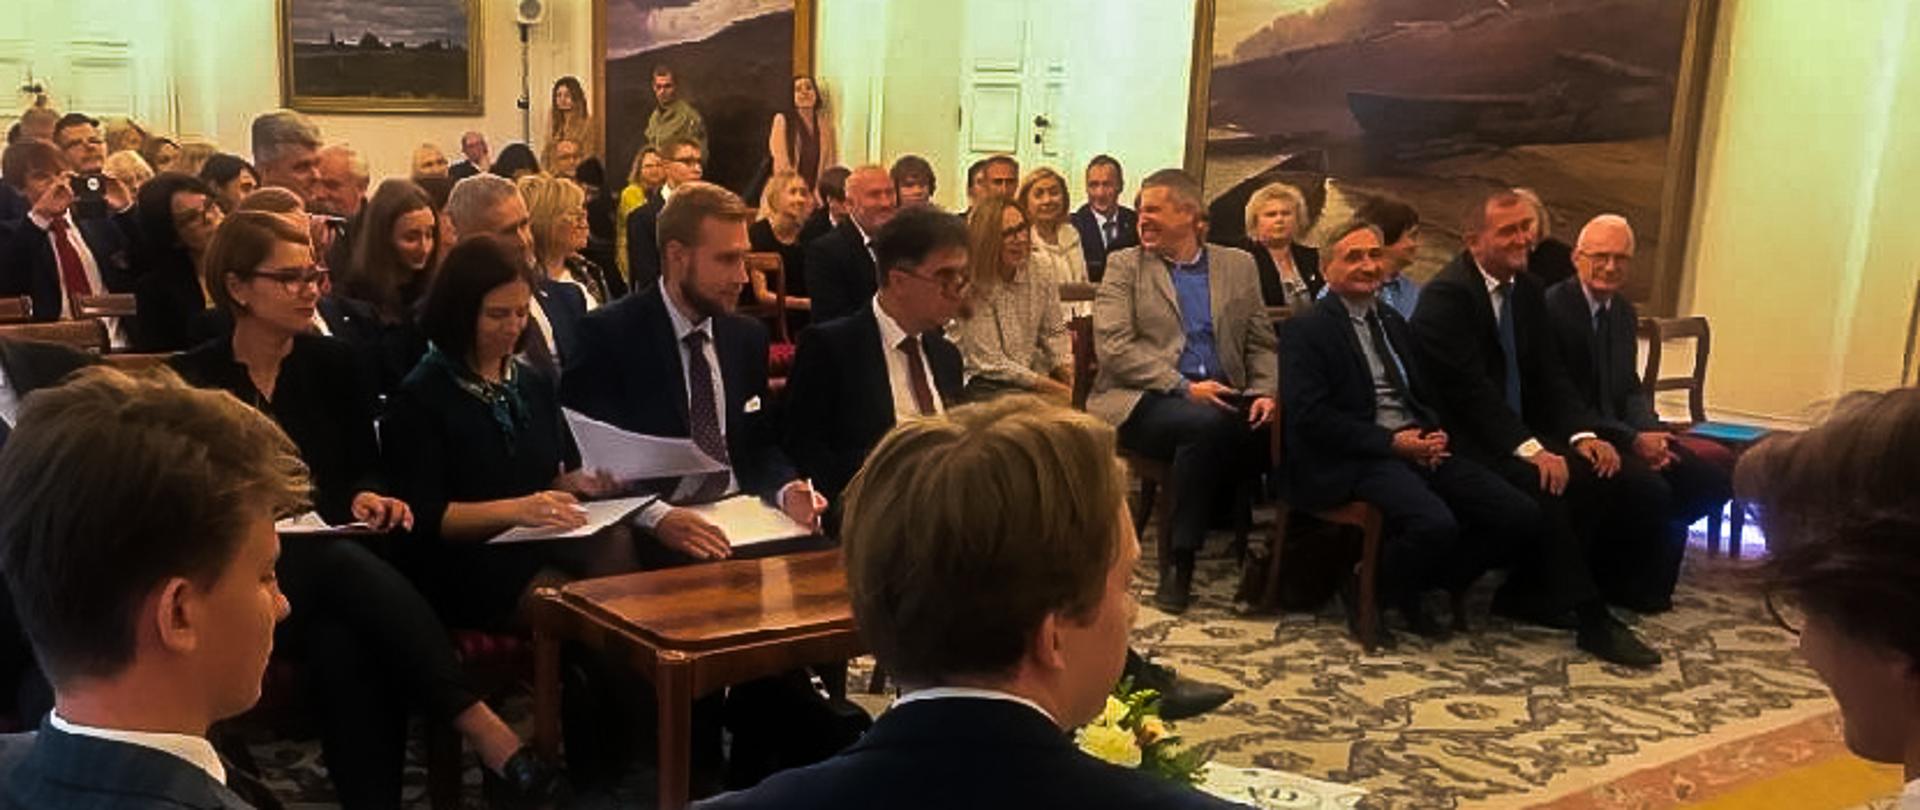 Debaty oksfordzkie – konferencja w Belwederze z udziałem wiceministra Macieja Kopcia